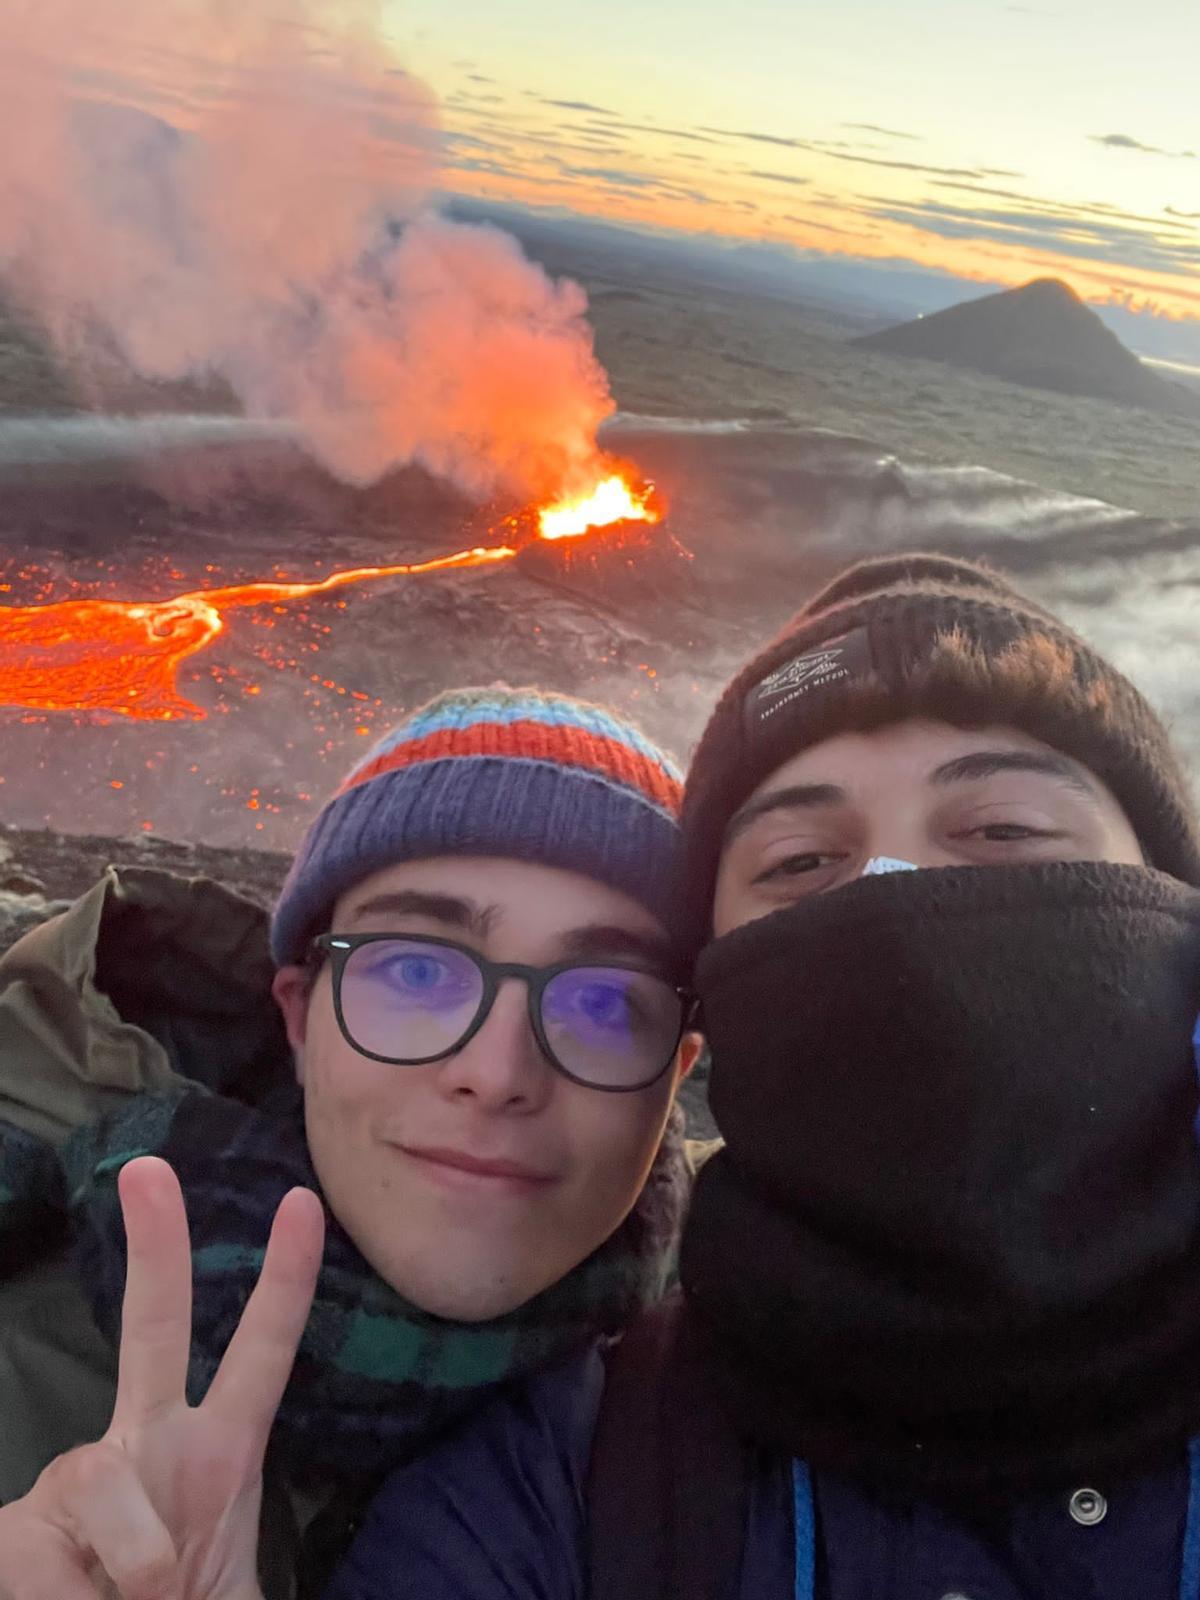 Otra imagen de ambos jóvenes ante el volcán